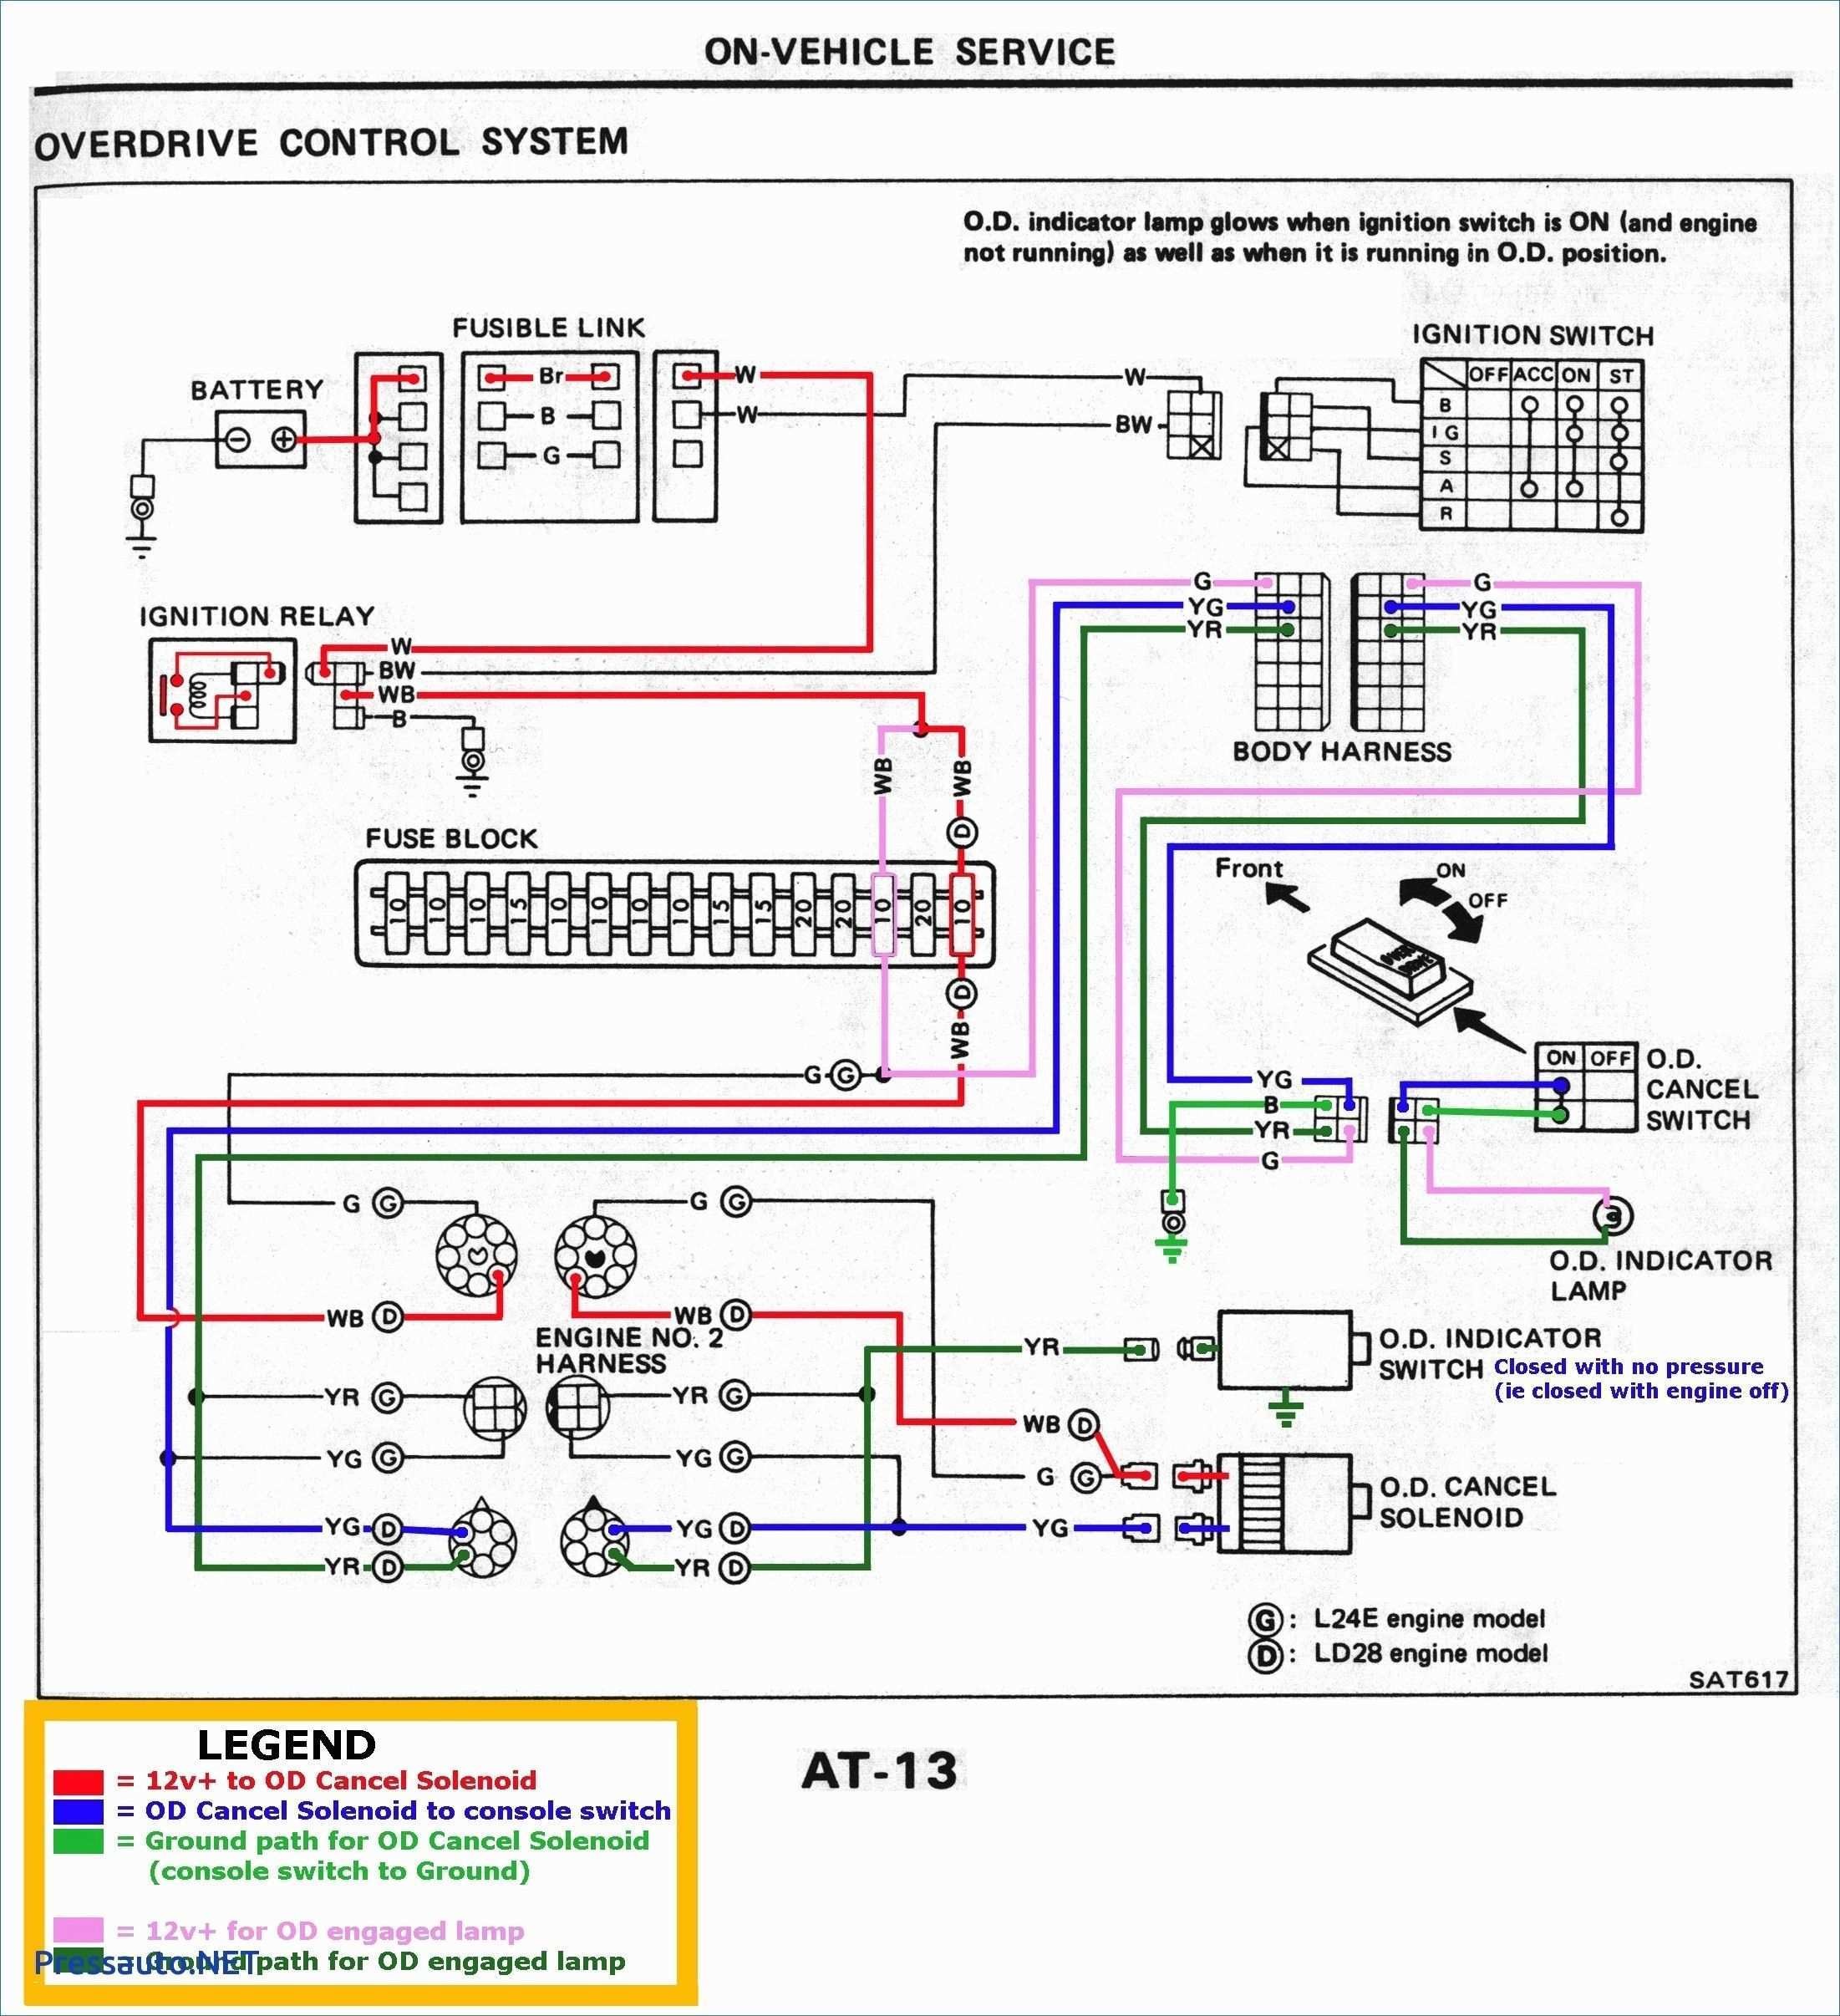 Sony Car Radio Wiring Diagram Vr3 Car Stereo Wiring Harness Of Sony Car Radio Wiring Diagram